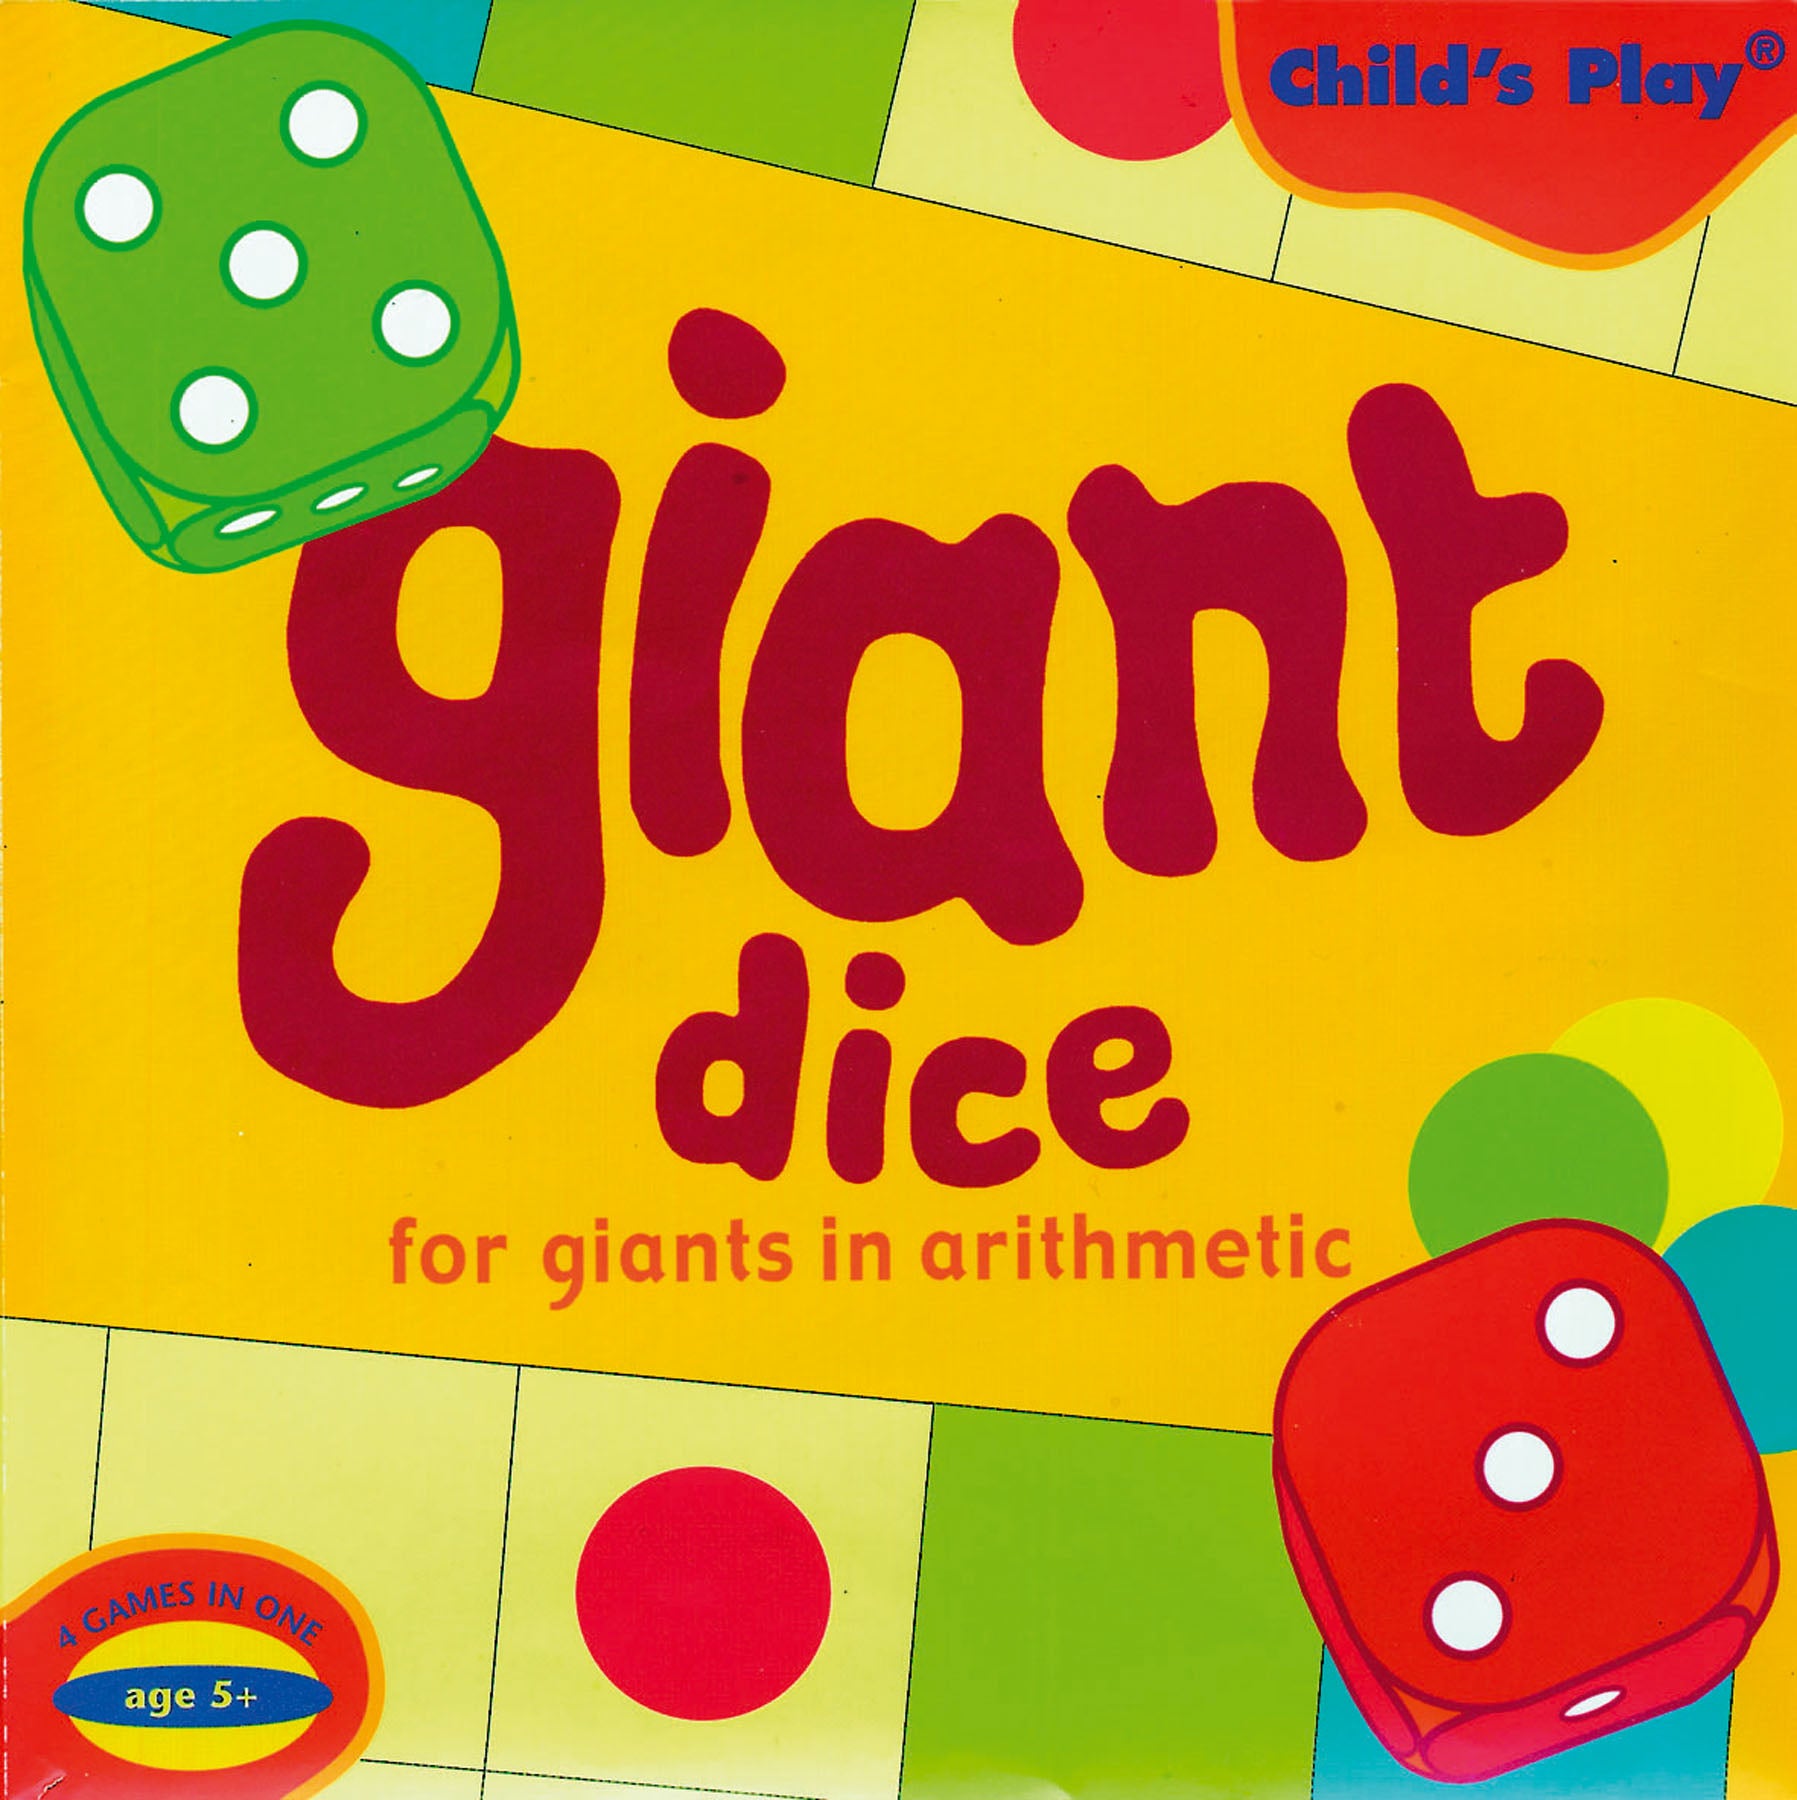 Giant Dice